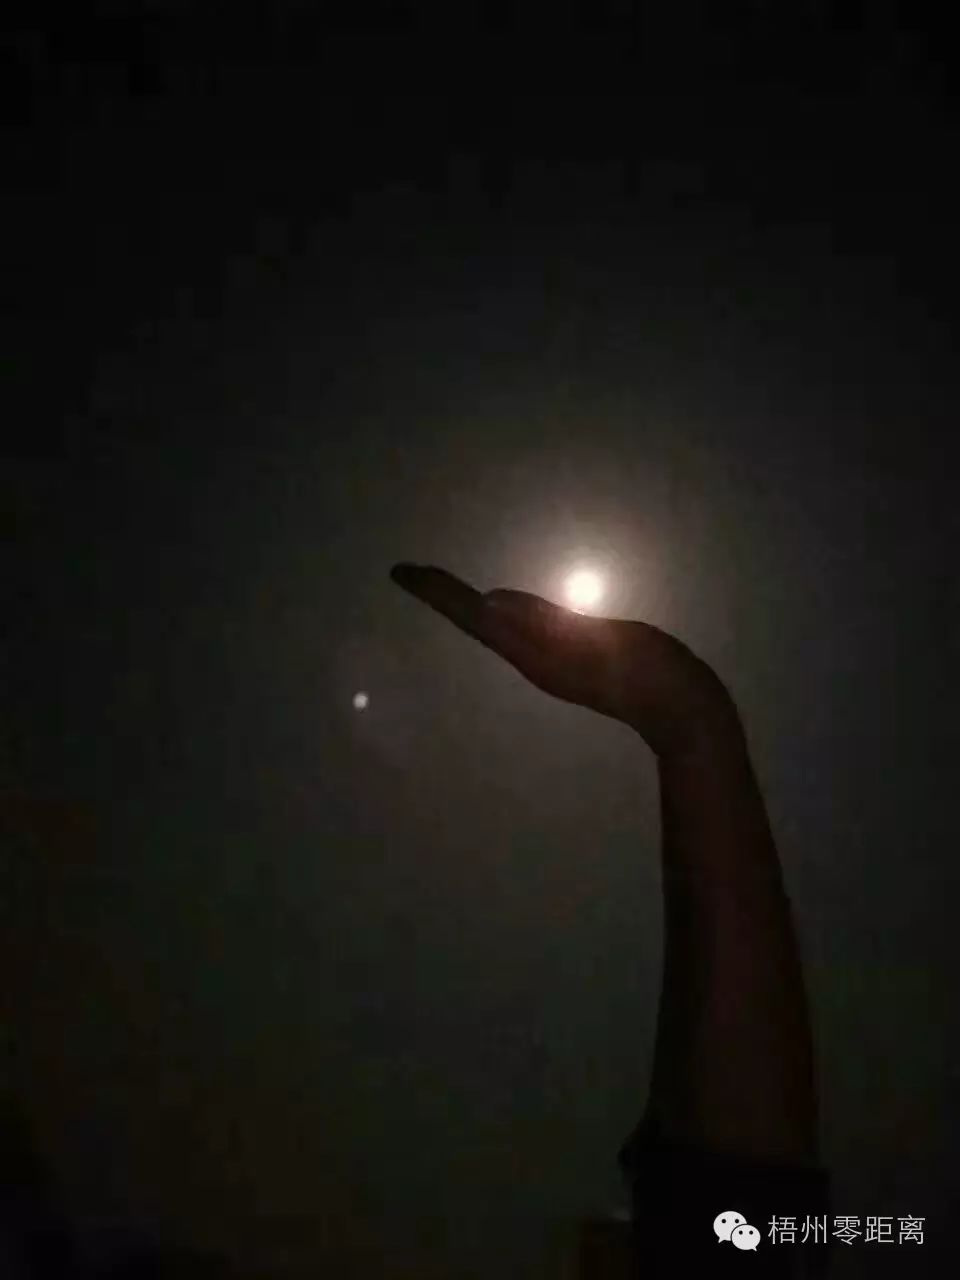 昨晚梧州的这轮超级月亮,零妹还没来得及欣赏,就被你们玩坏了